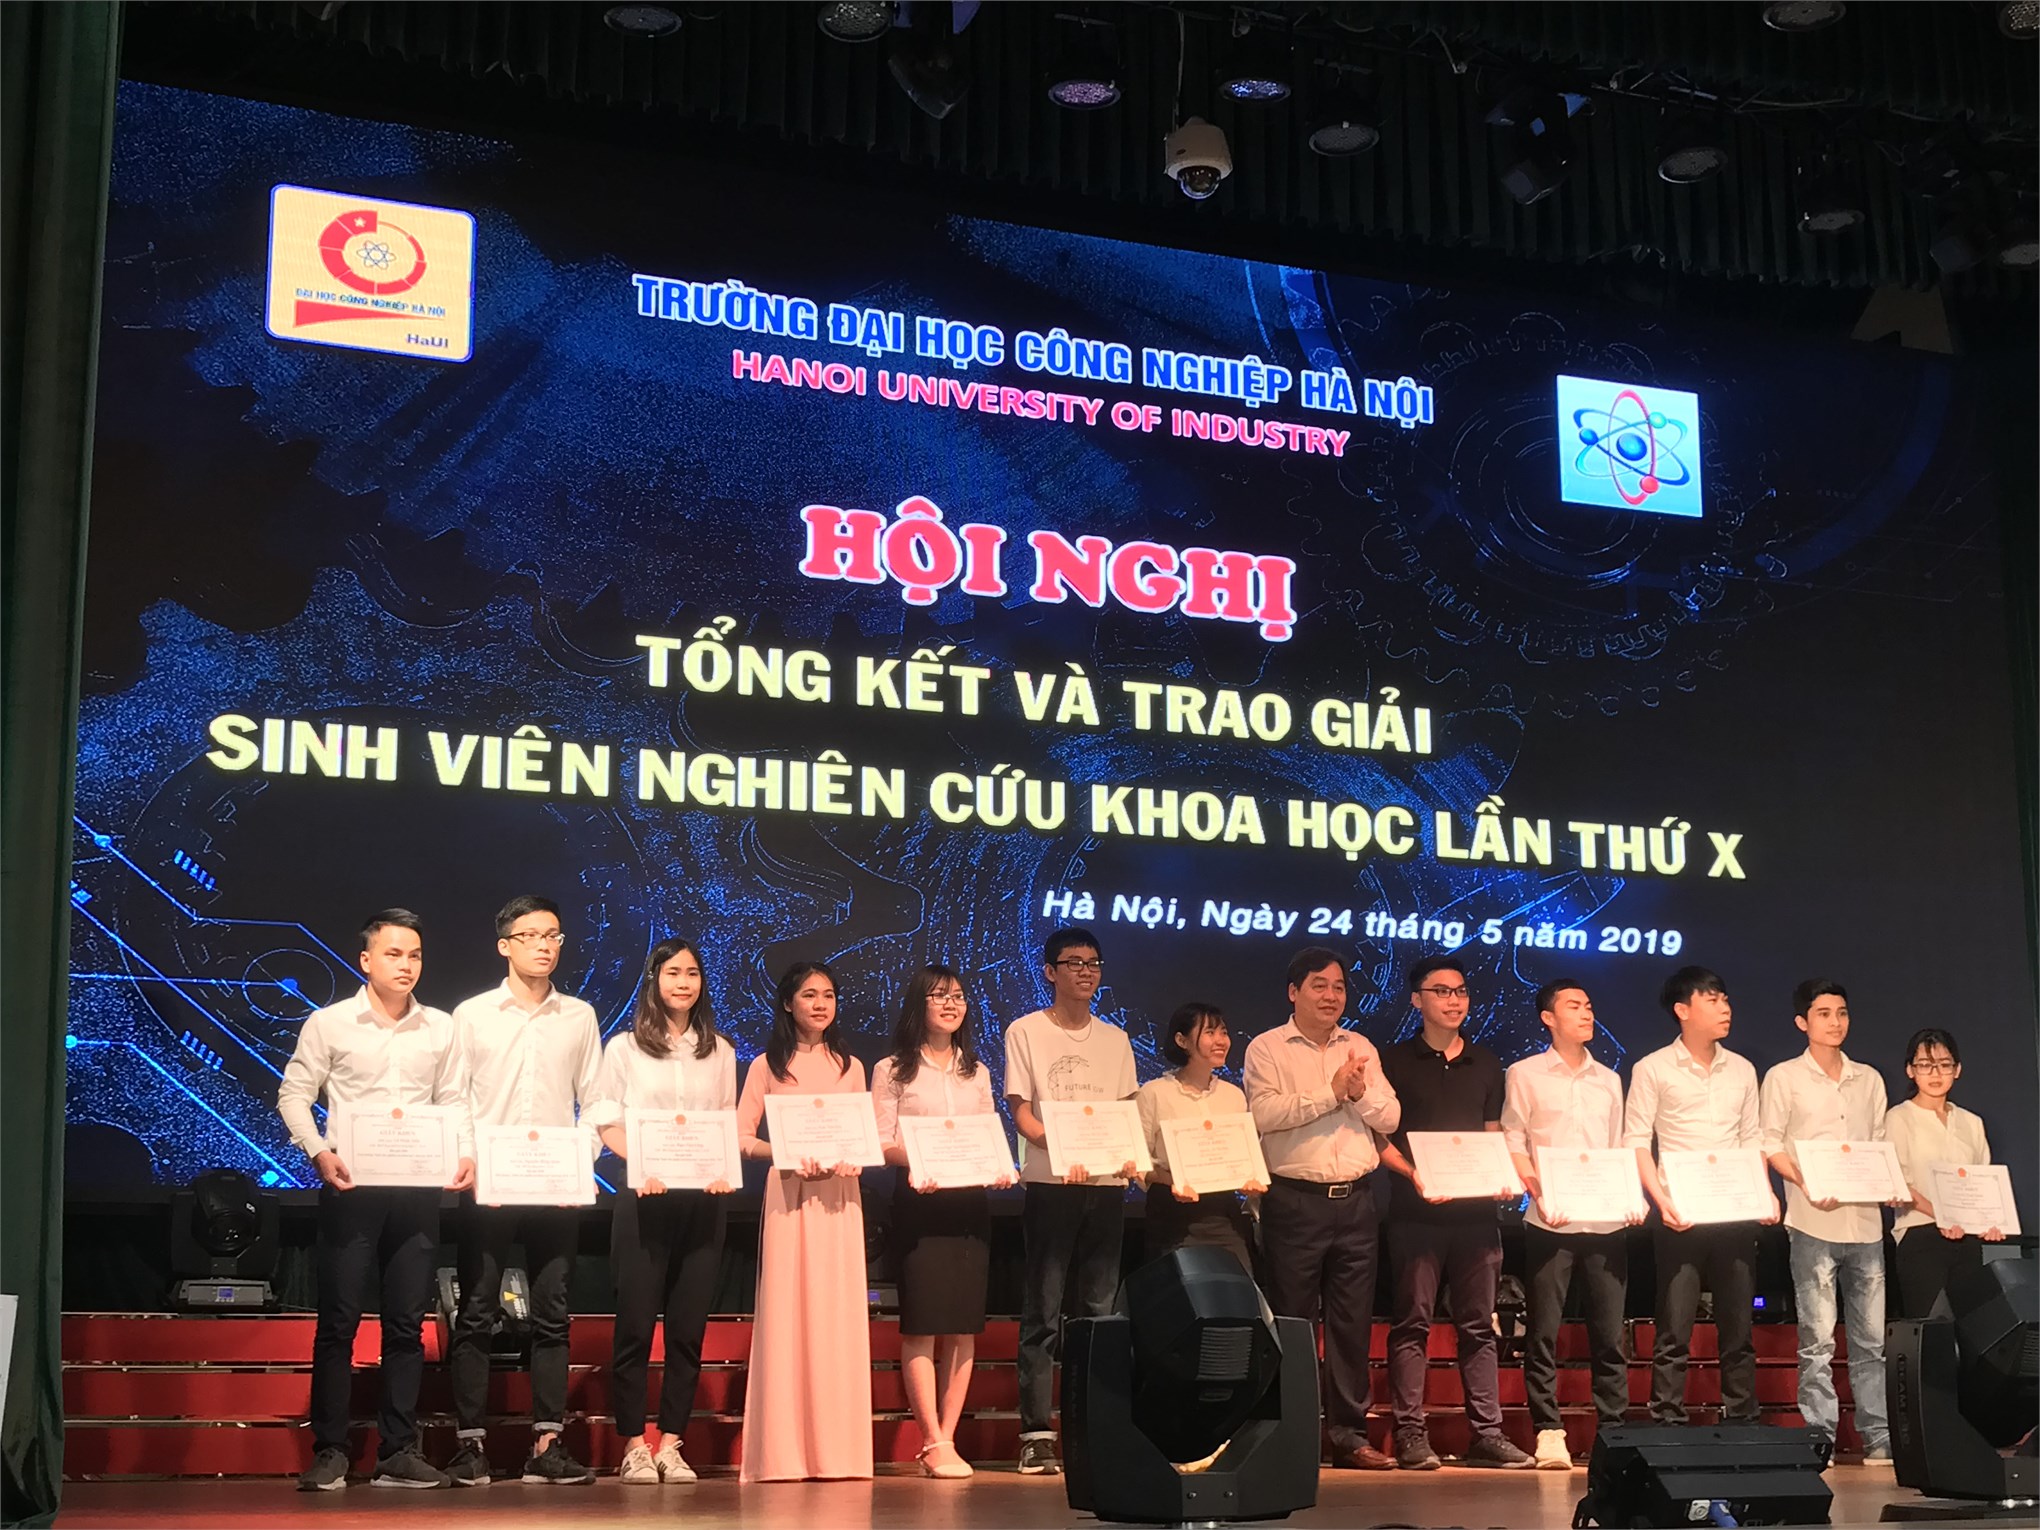 Hội nghị tổng kết và trao giải sinh viên NCKH lần thứ X-HaUi